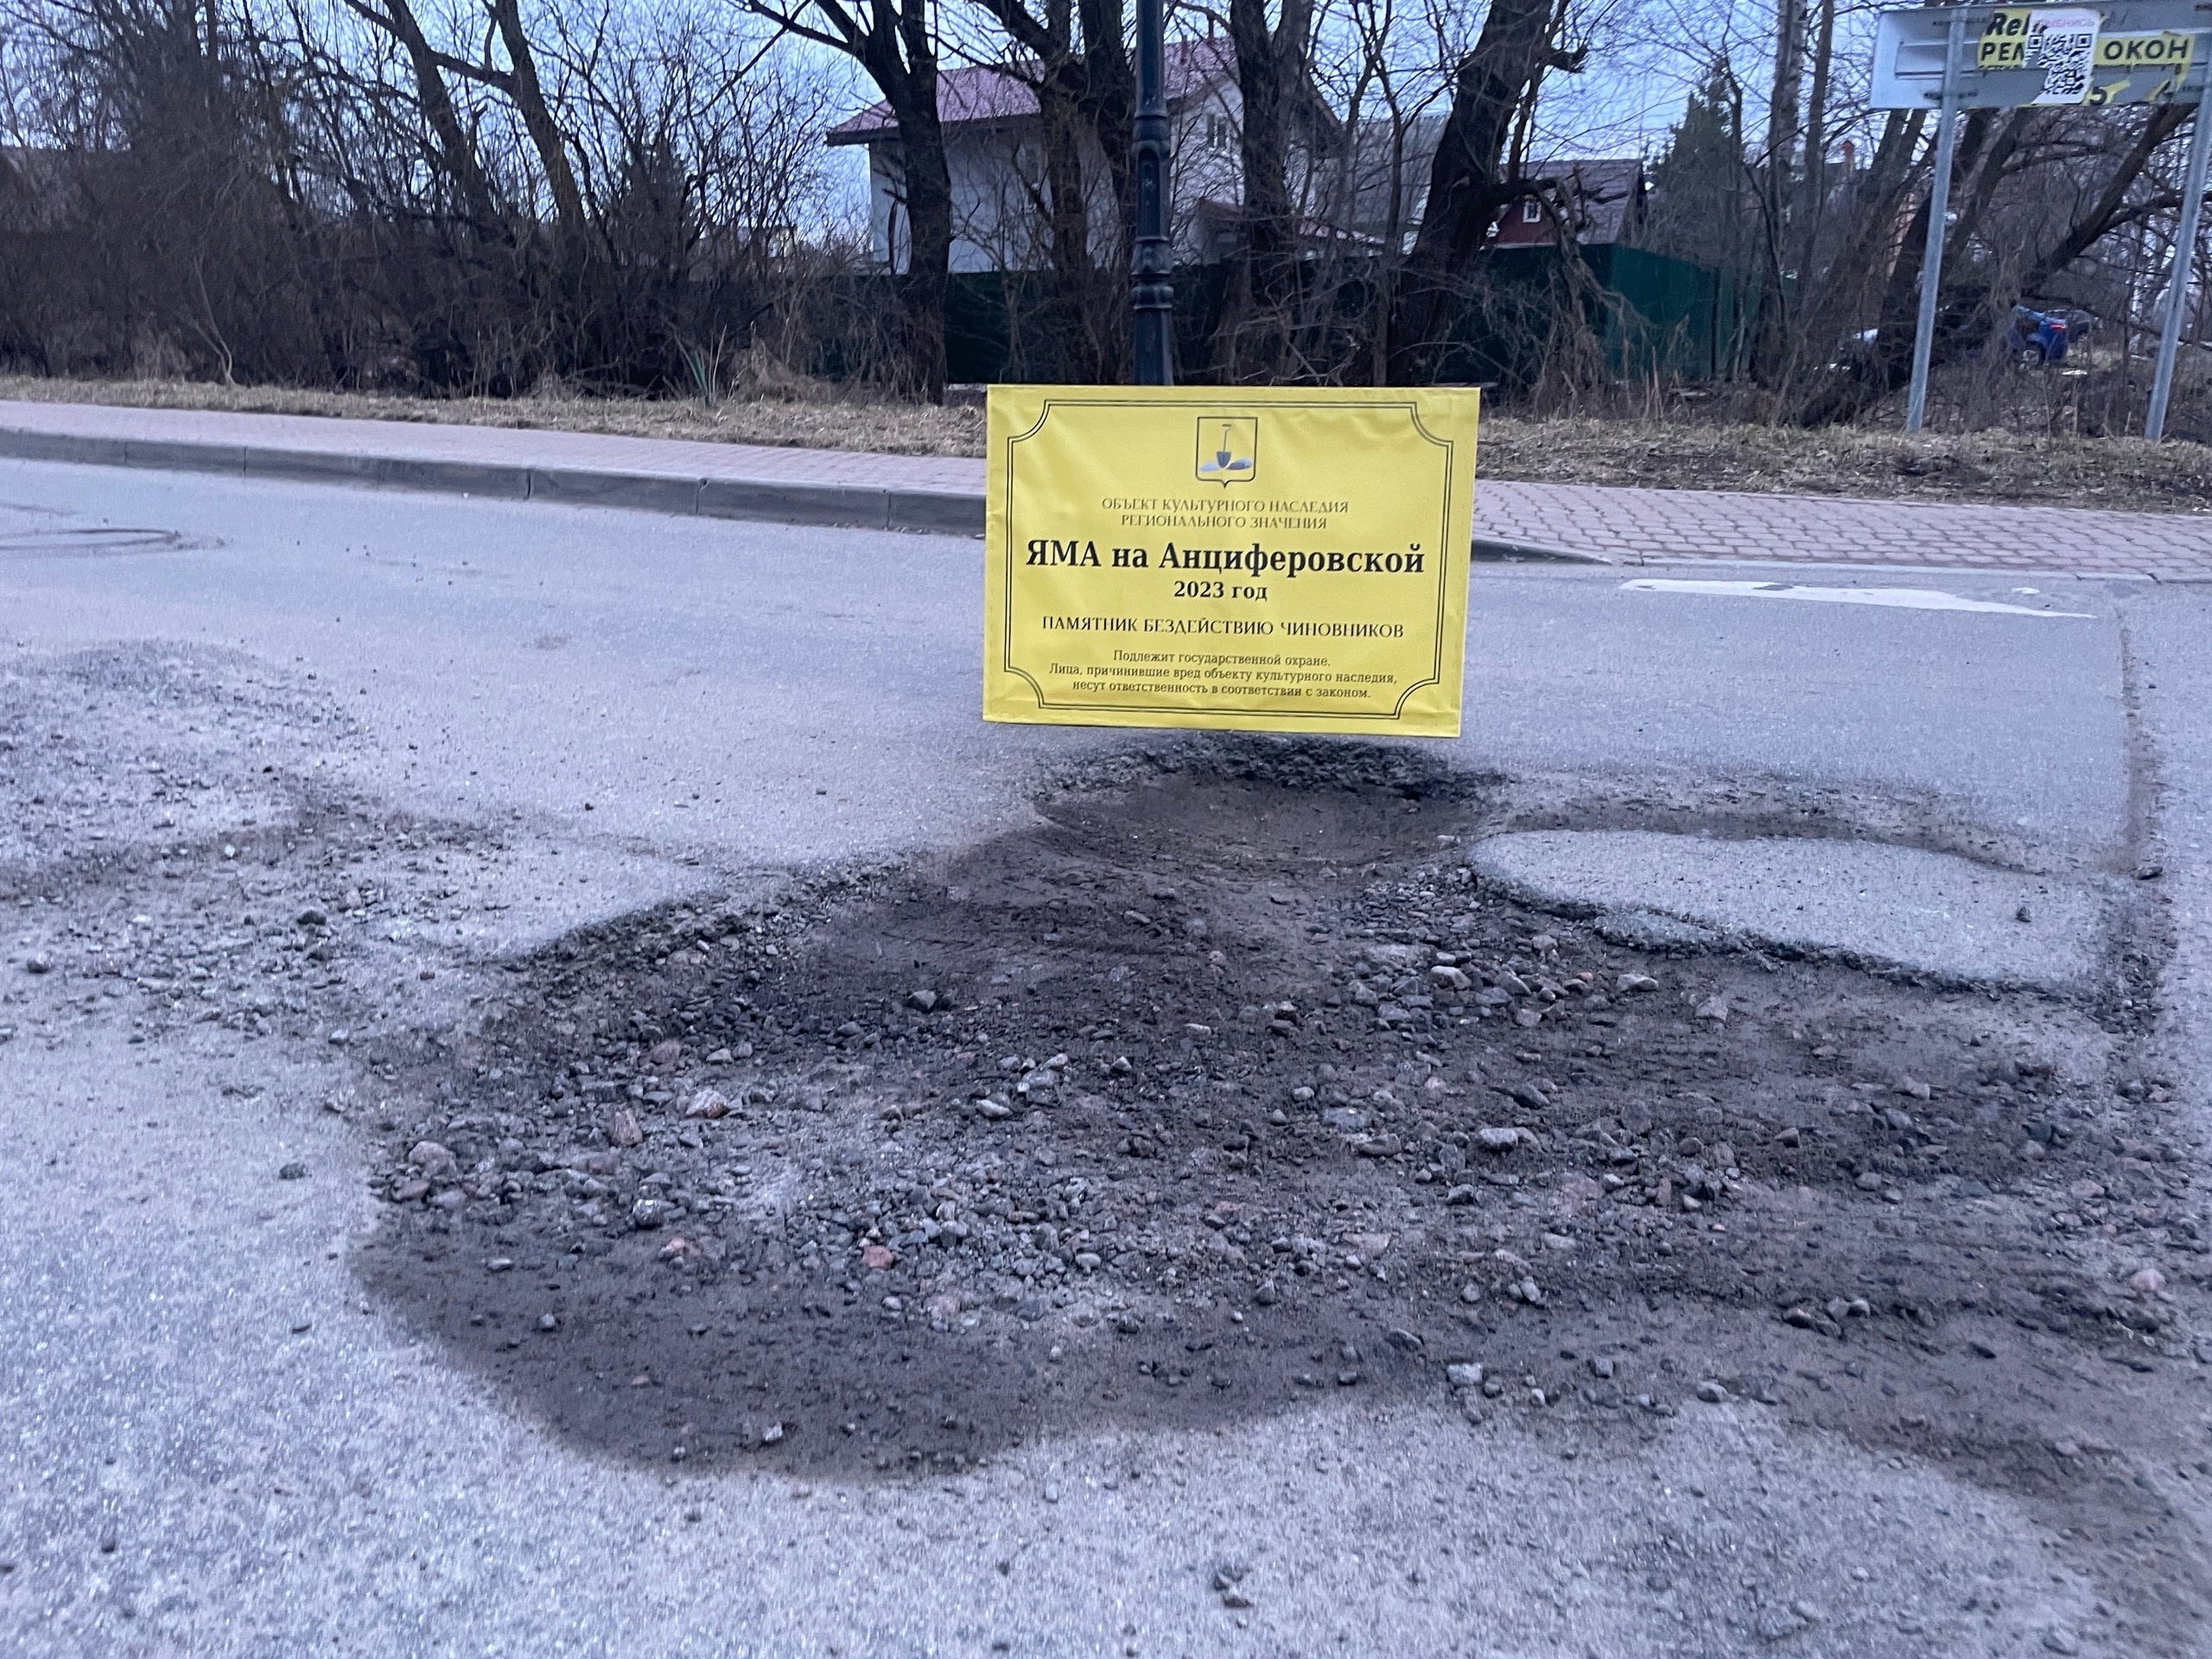 Смольный просят признать памятником дорожную яму в Пушкине